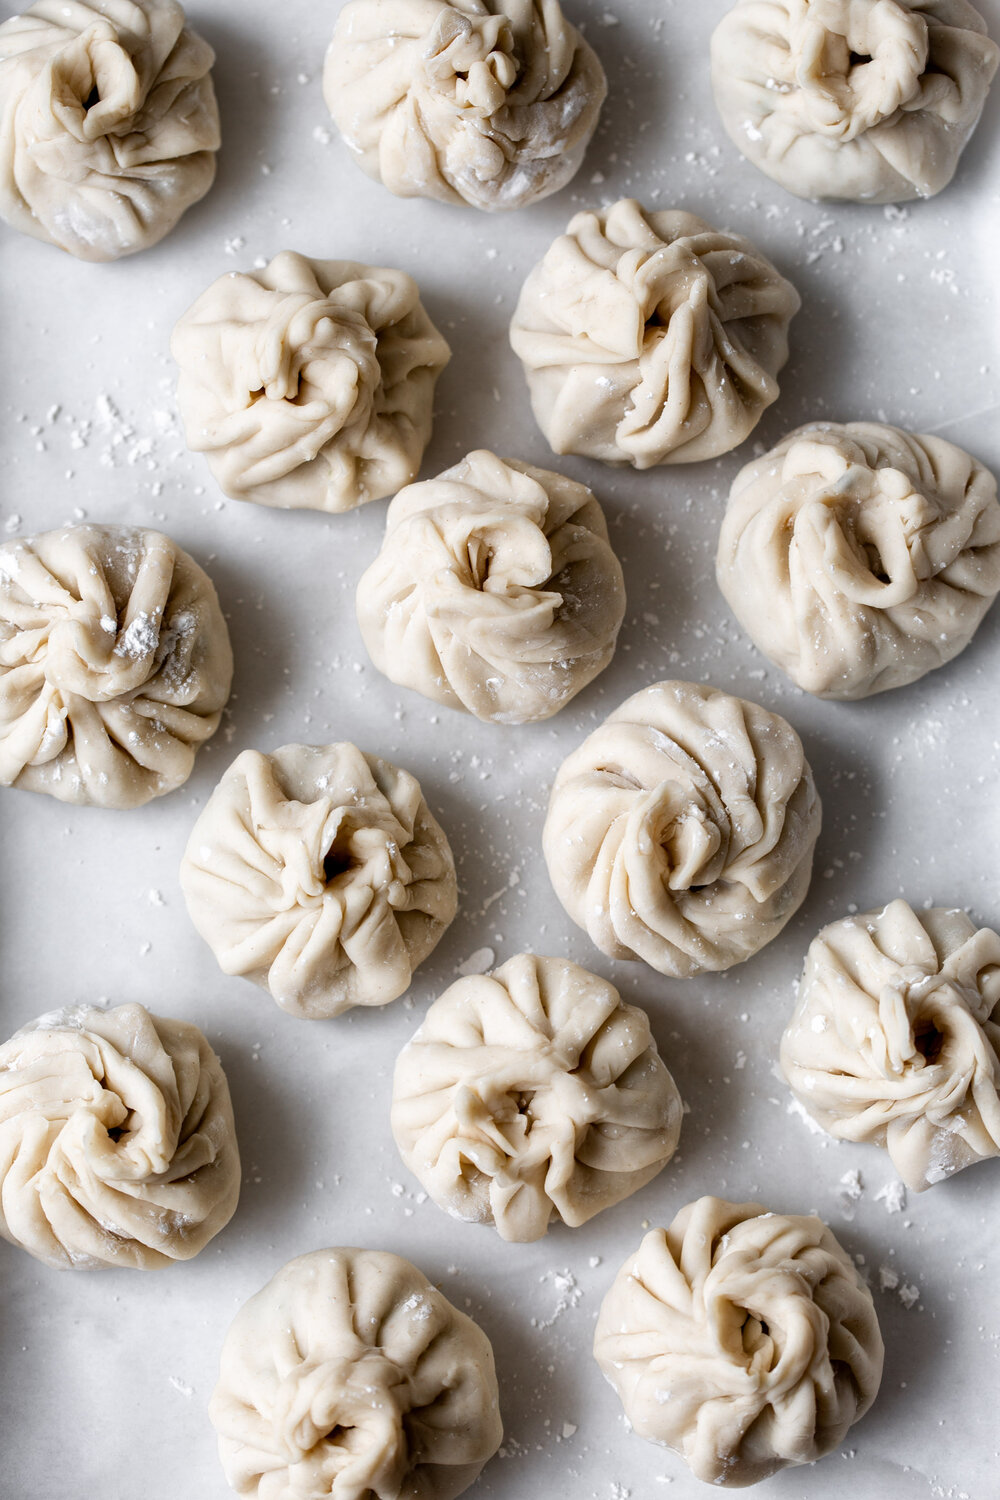 shaped twisted circular dumplings